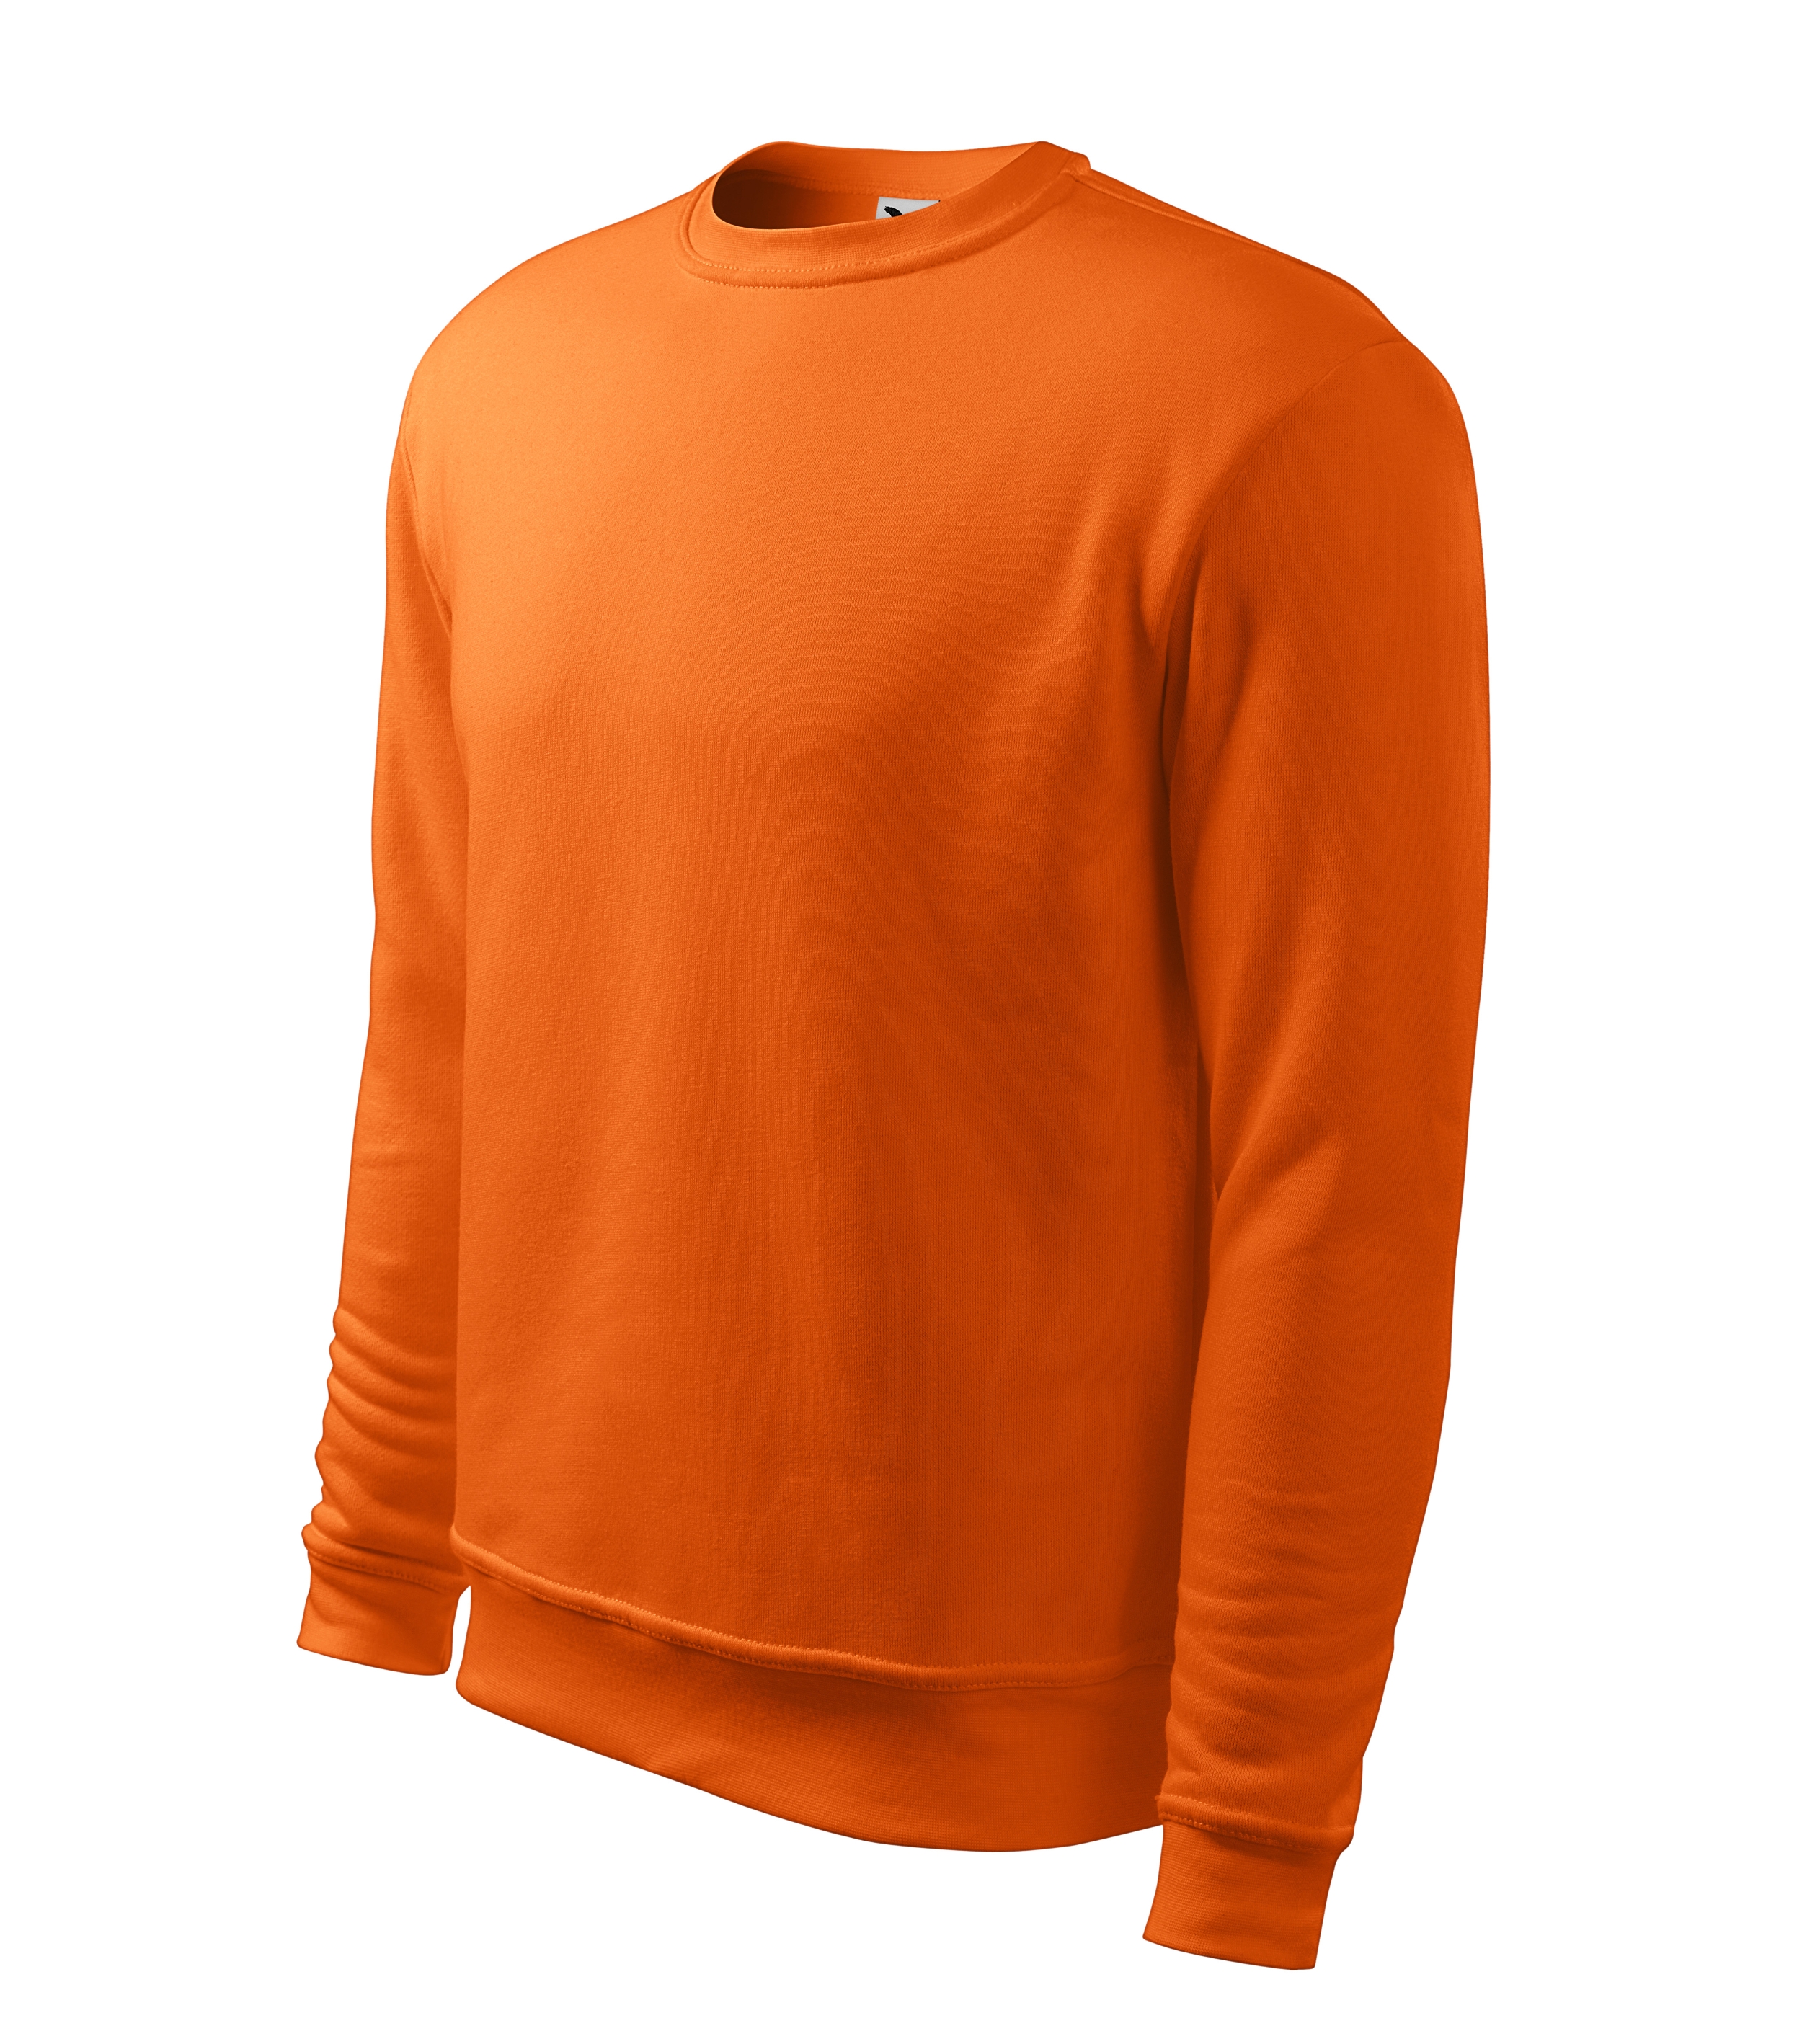 Sweatshirt für Herren und Kinder -  ESSENTIAL 406 - Ärmelmanschetten und Kragensaum - Pullover oder Sweater ohne Kapuze  für Männer Jungen und Mädchen 